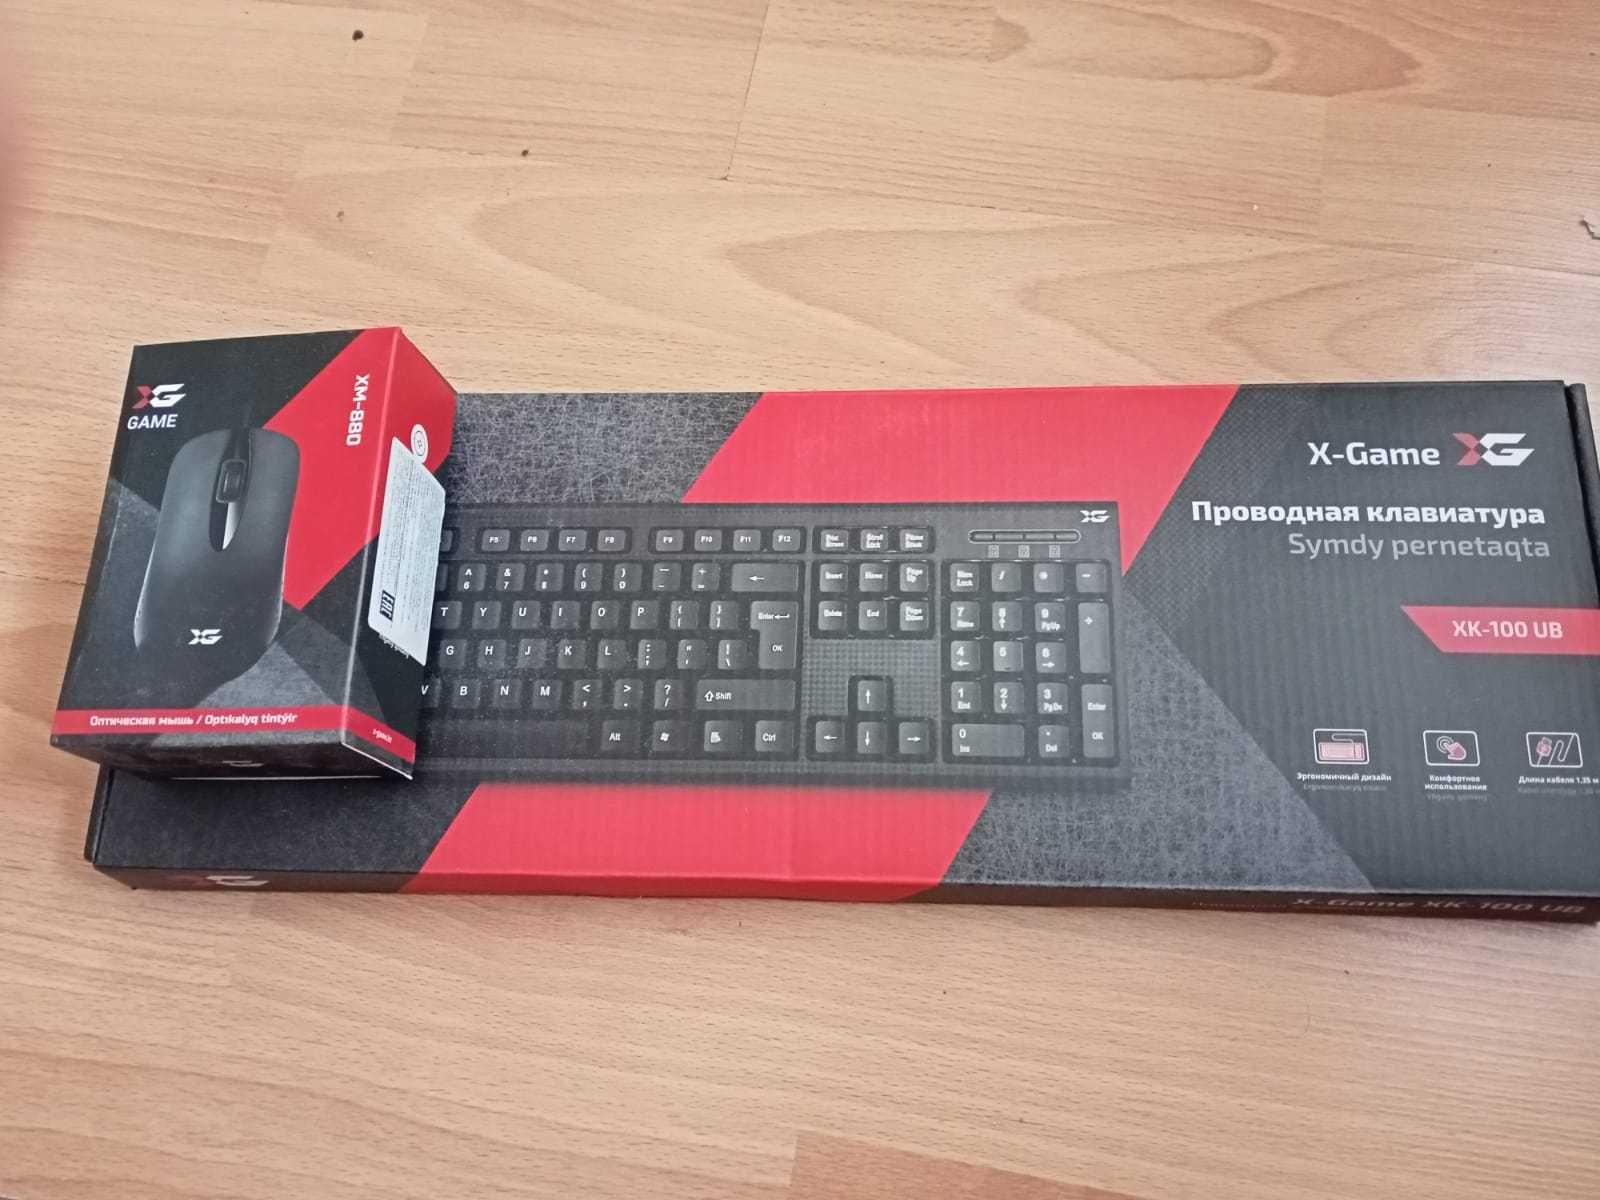 Клавиатура и мышка (новые в коробке)